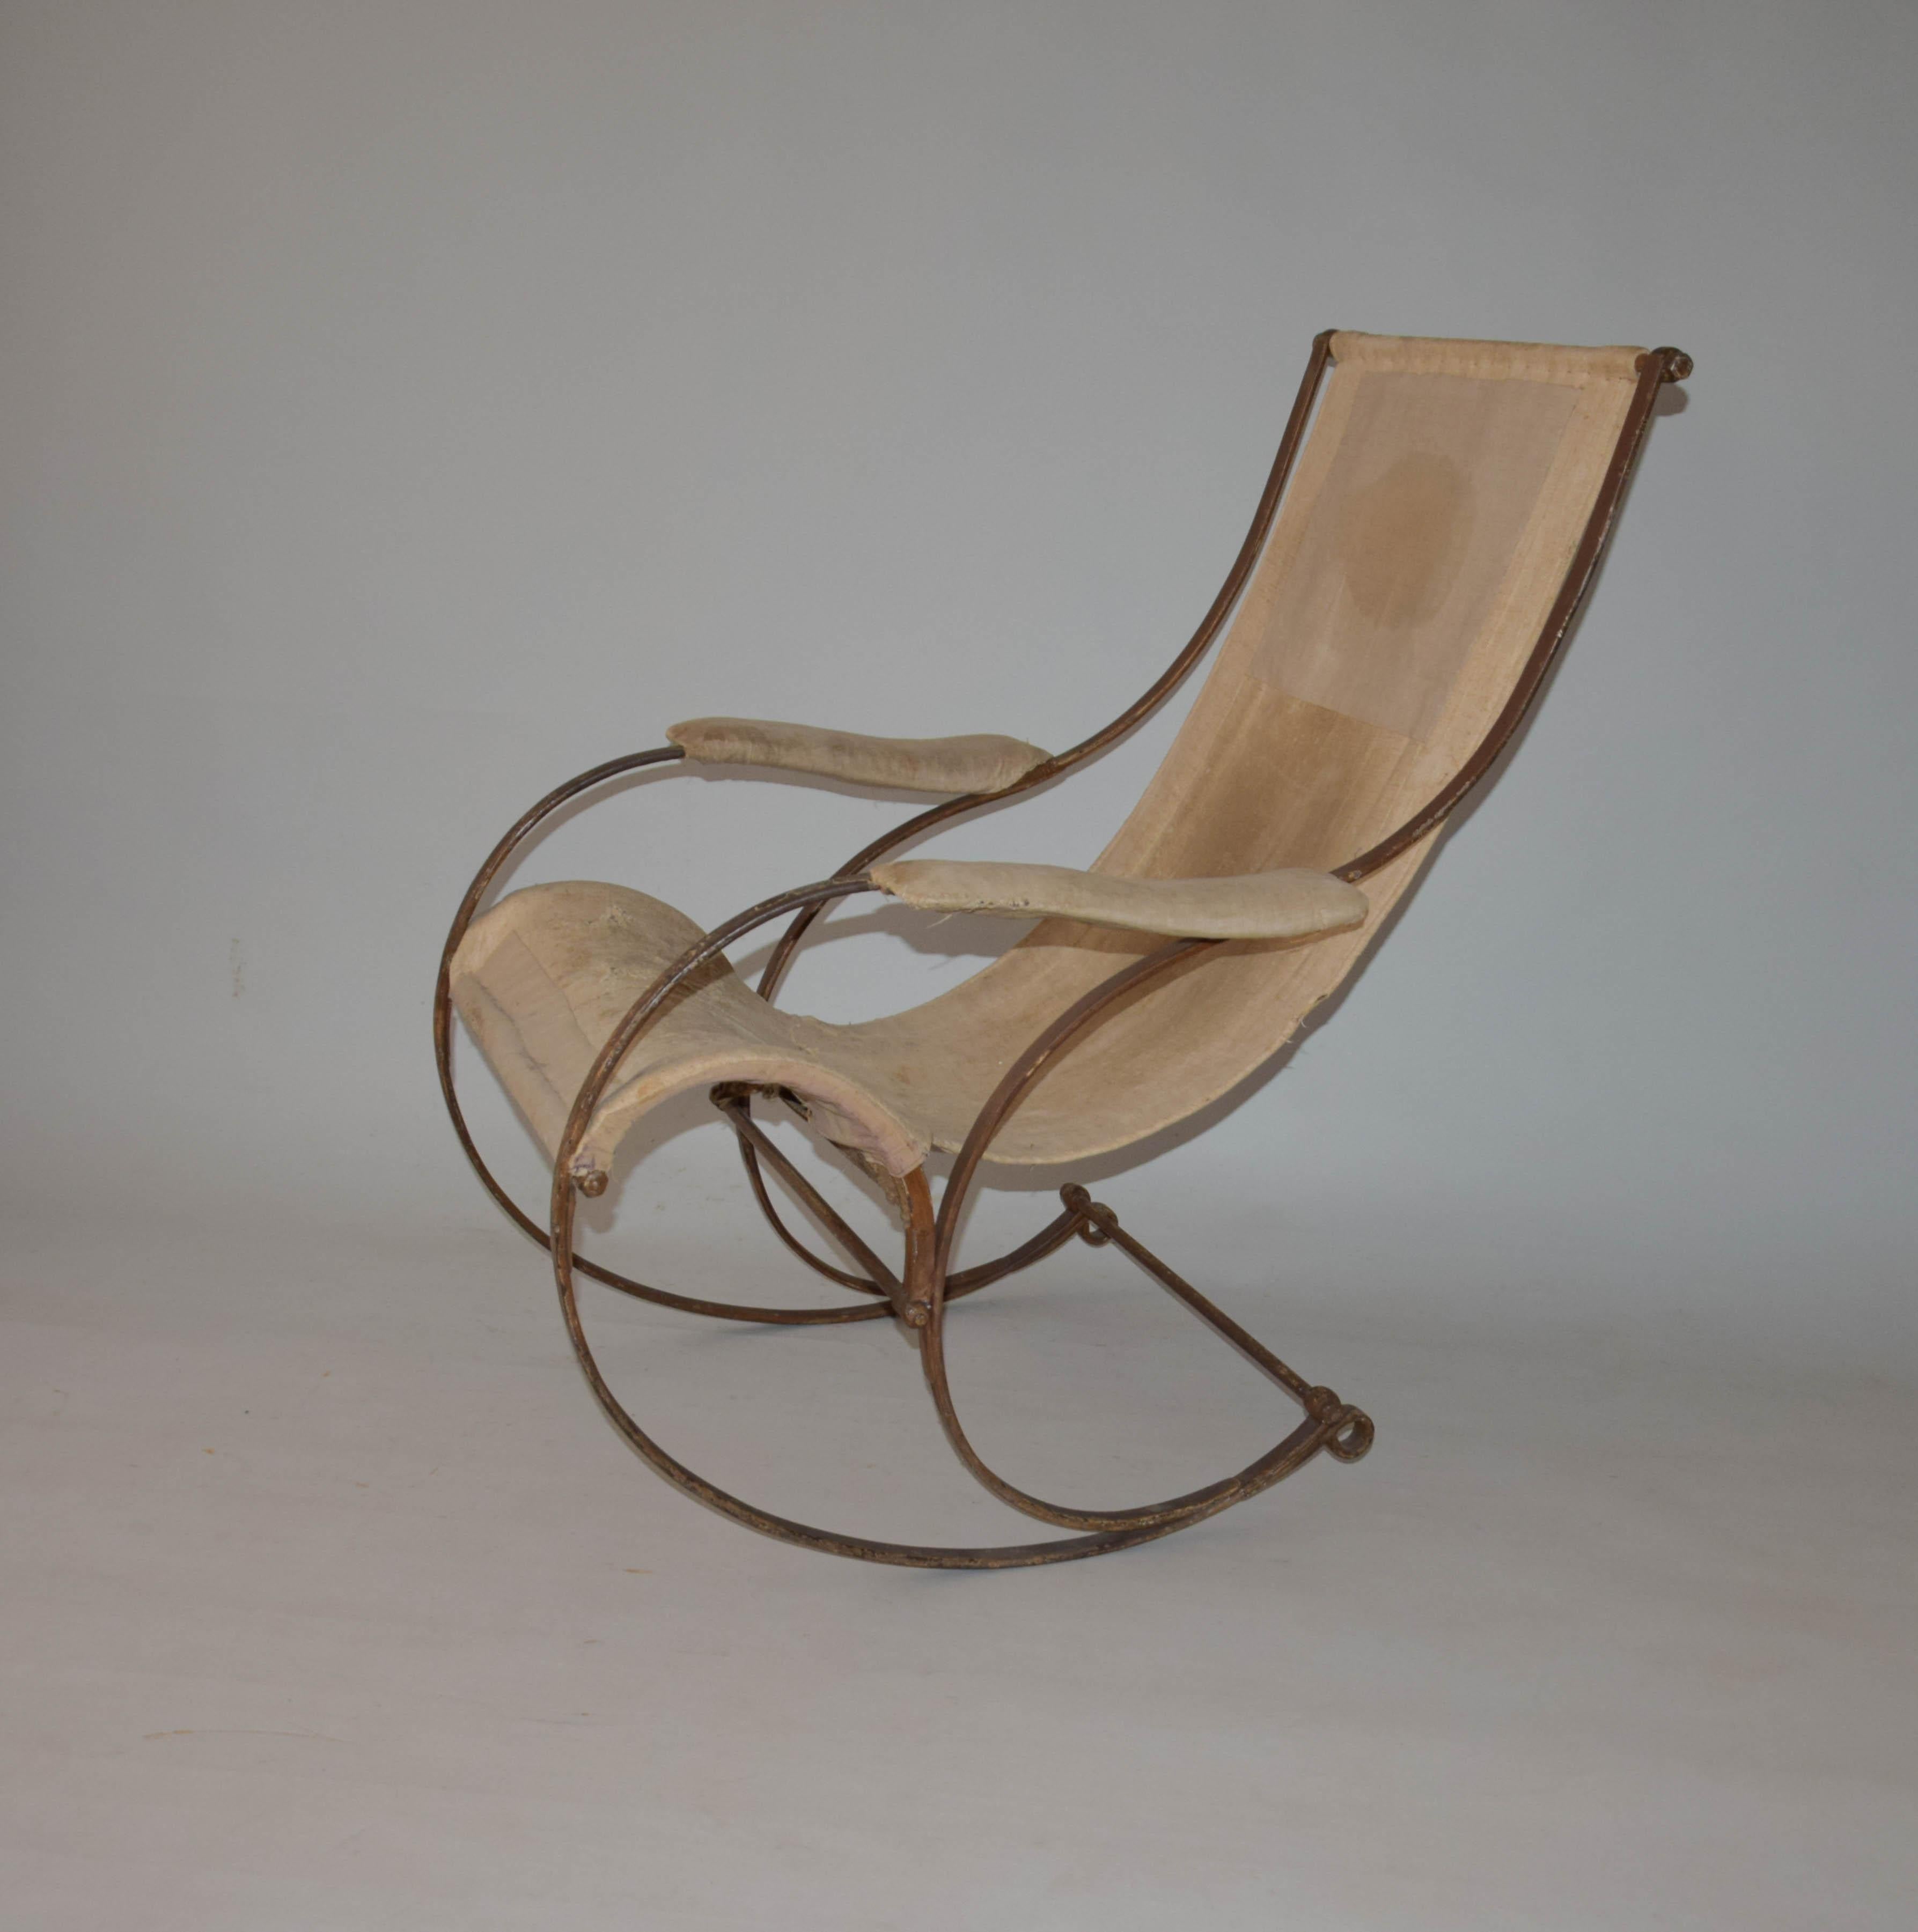 Dieser Stuhl wurde erstmals 1851 auf der ersten Weltausstellung in London und 1862 auf der Weltausstellung ausgestellt. Peter Coper (1791-1883), einer der wichtigsten Vertreter der amerikanischen Industrie und führenden Designer, arbeitete in